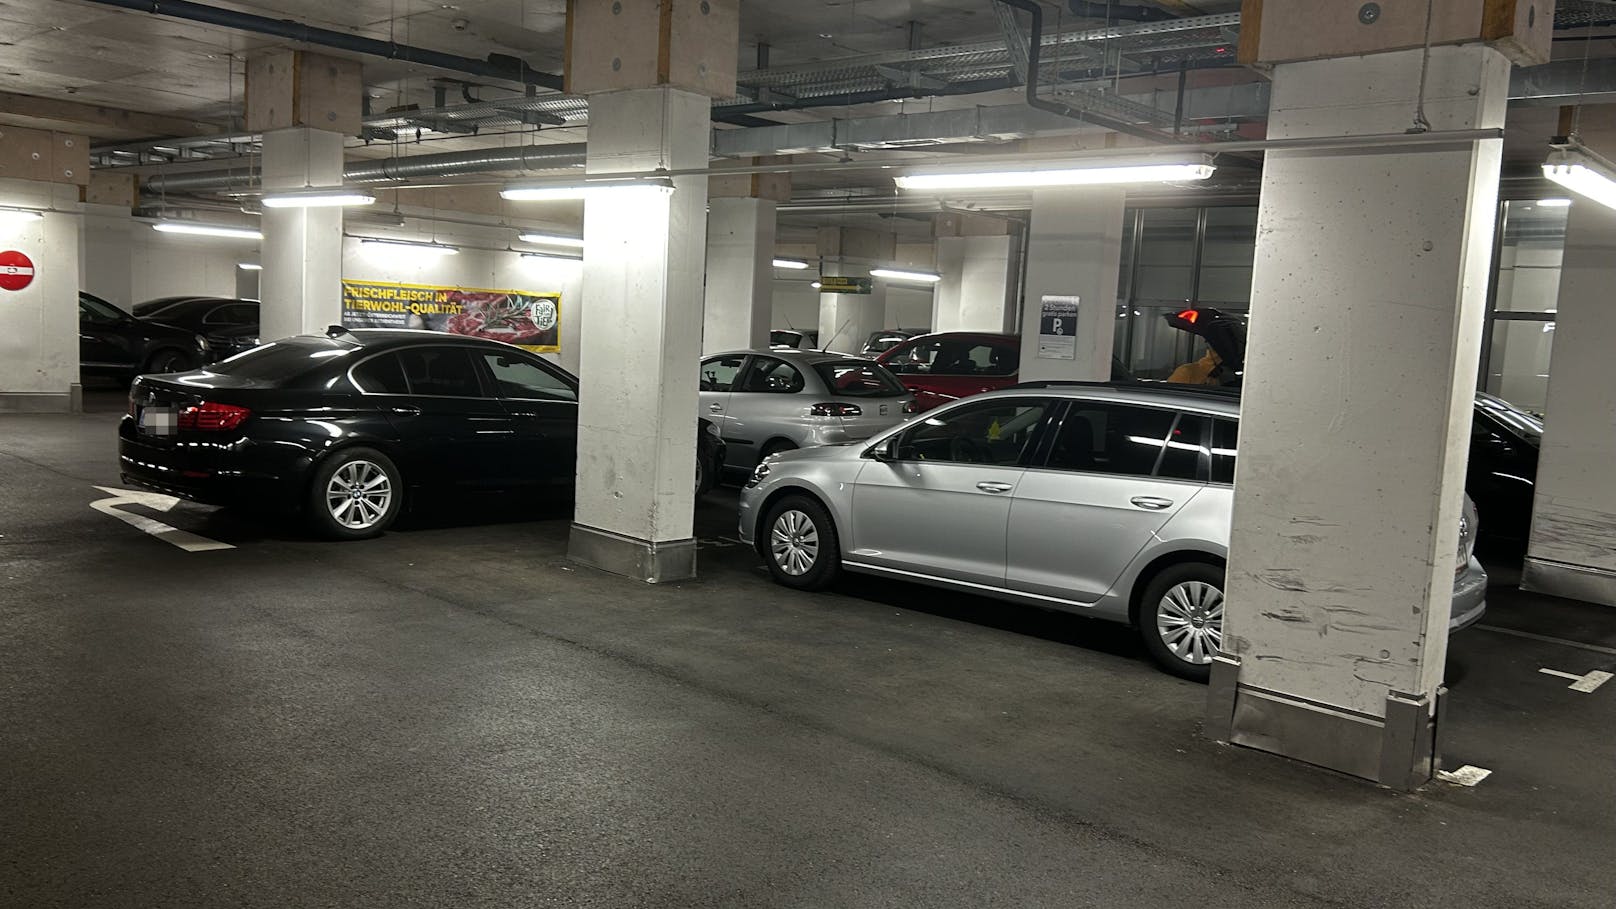 BMW verstellt Garage – Wiener wütet über "Parkkünstler"